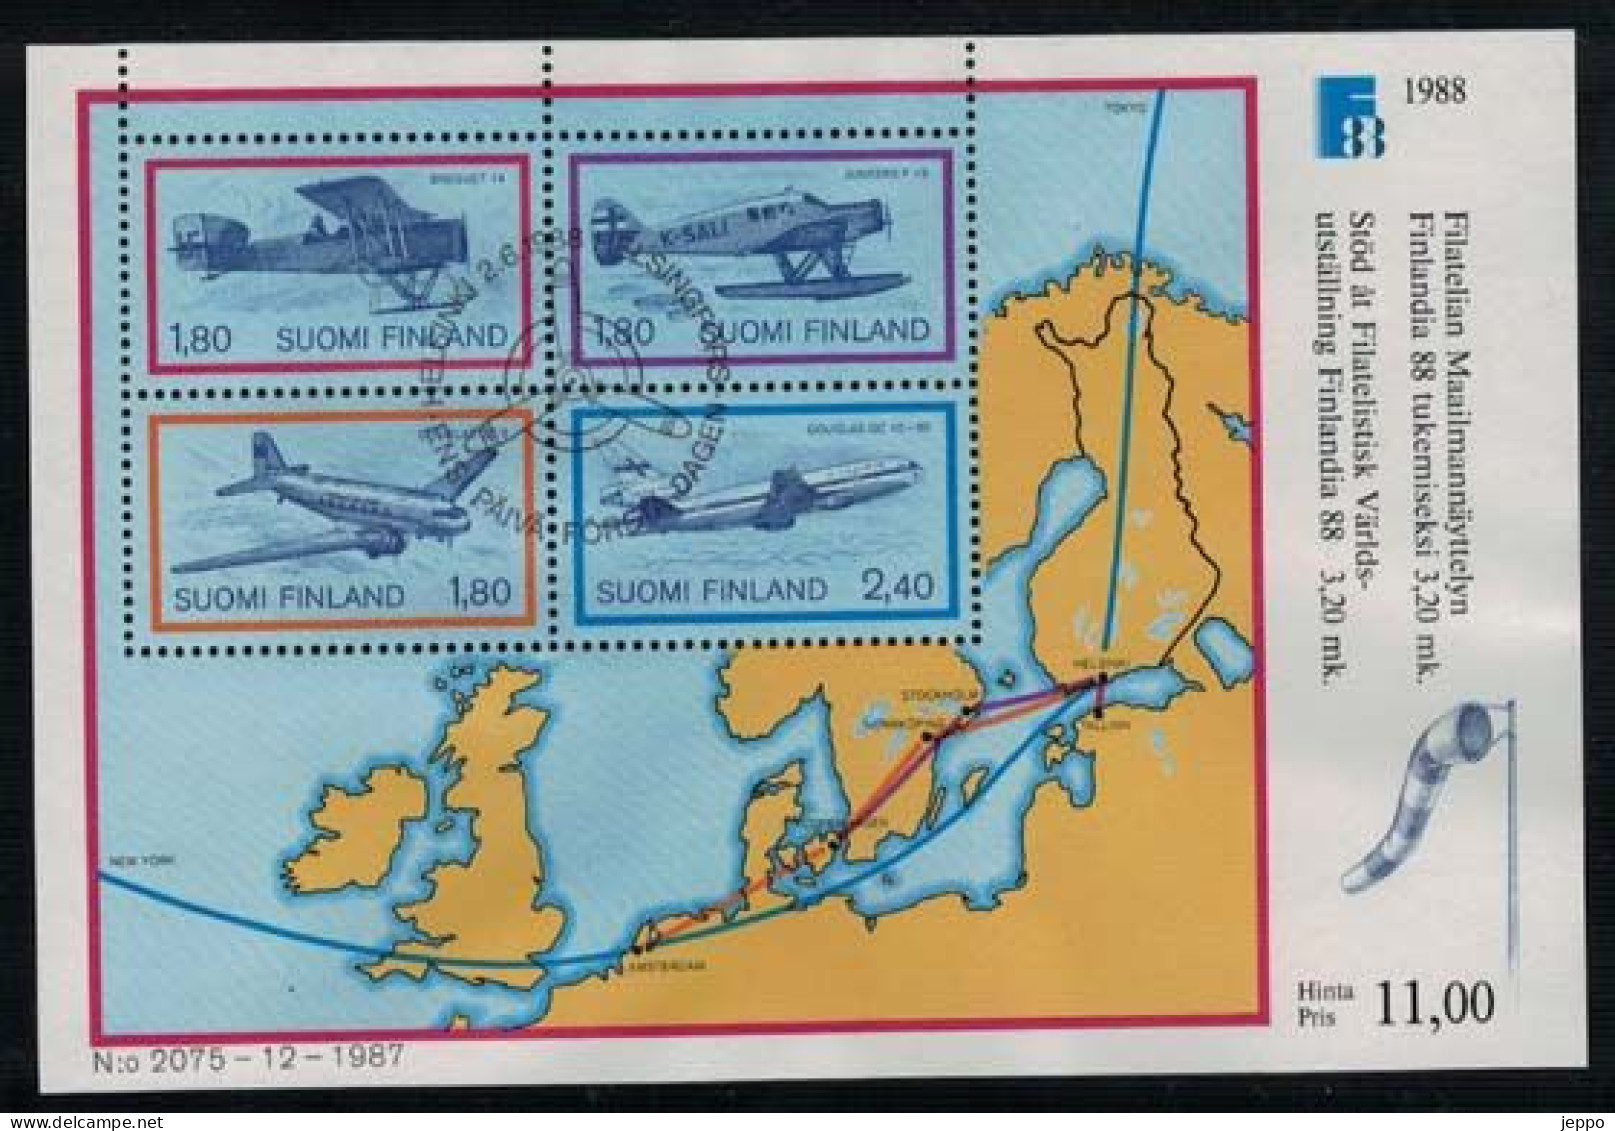 1988 Finland Michel Bl 4, Finlandia 88 Aeroplanes, FD Stamped. - Blocks & Kleinbögen